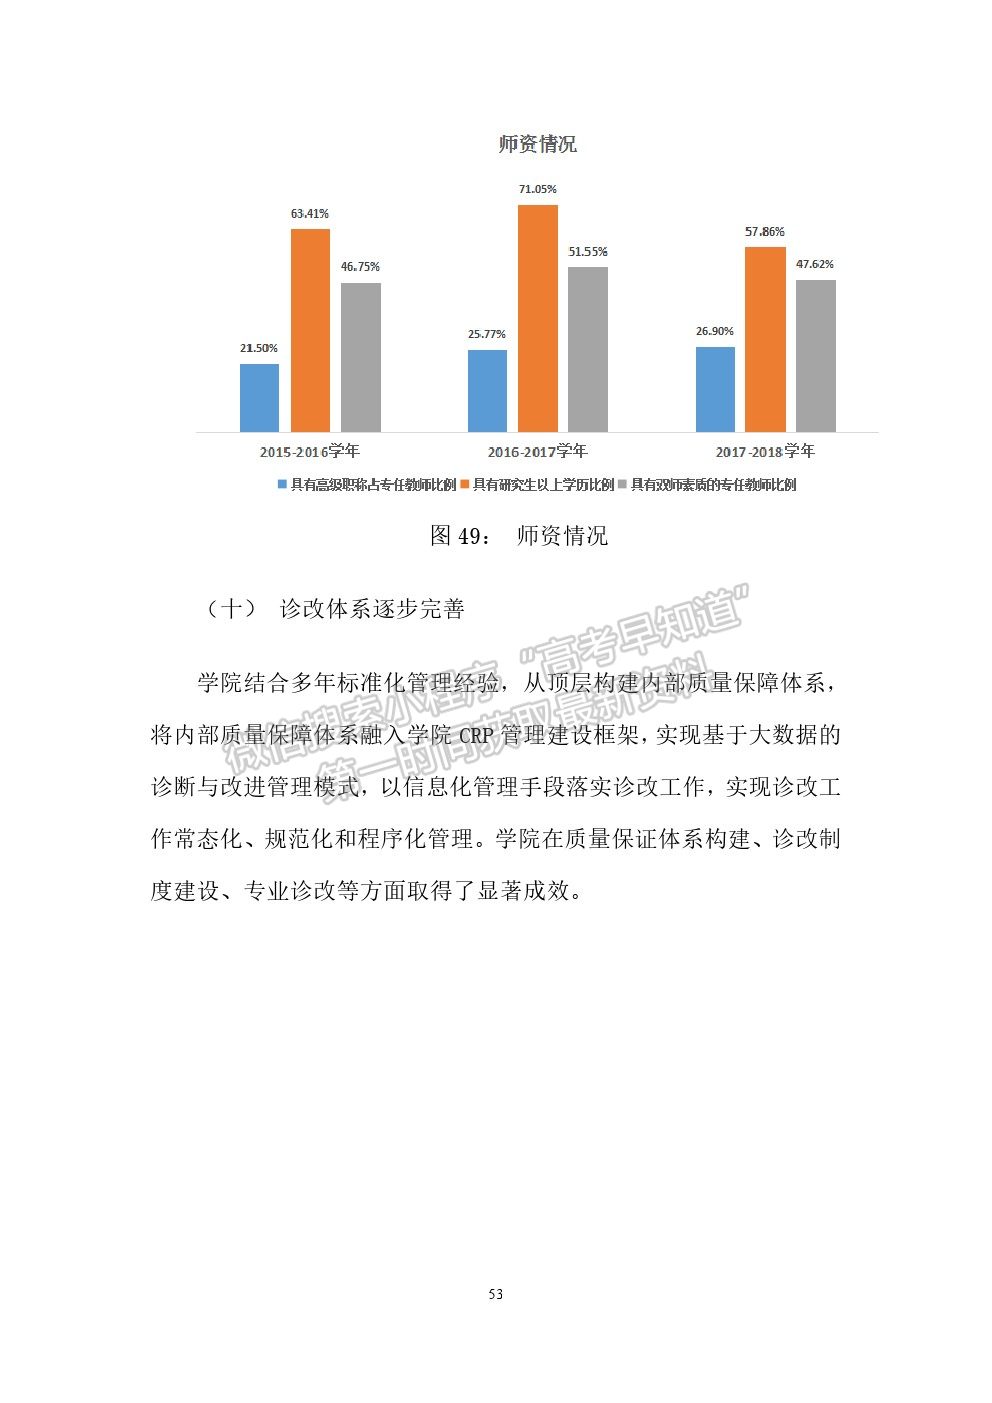 广州工程技术职业学院2019年就业质量报告